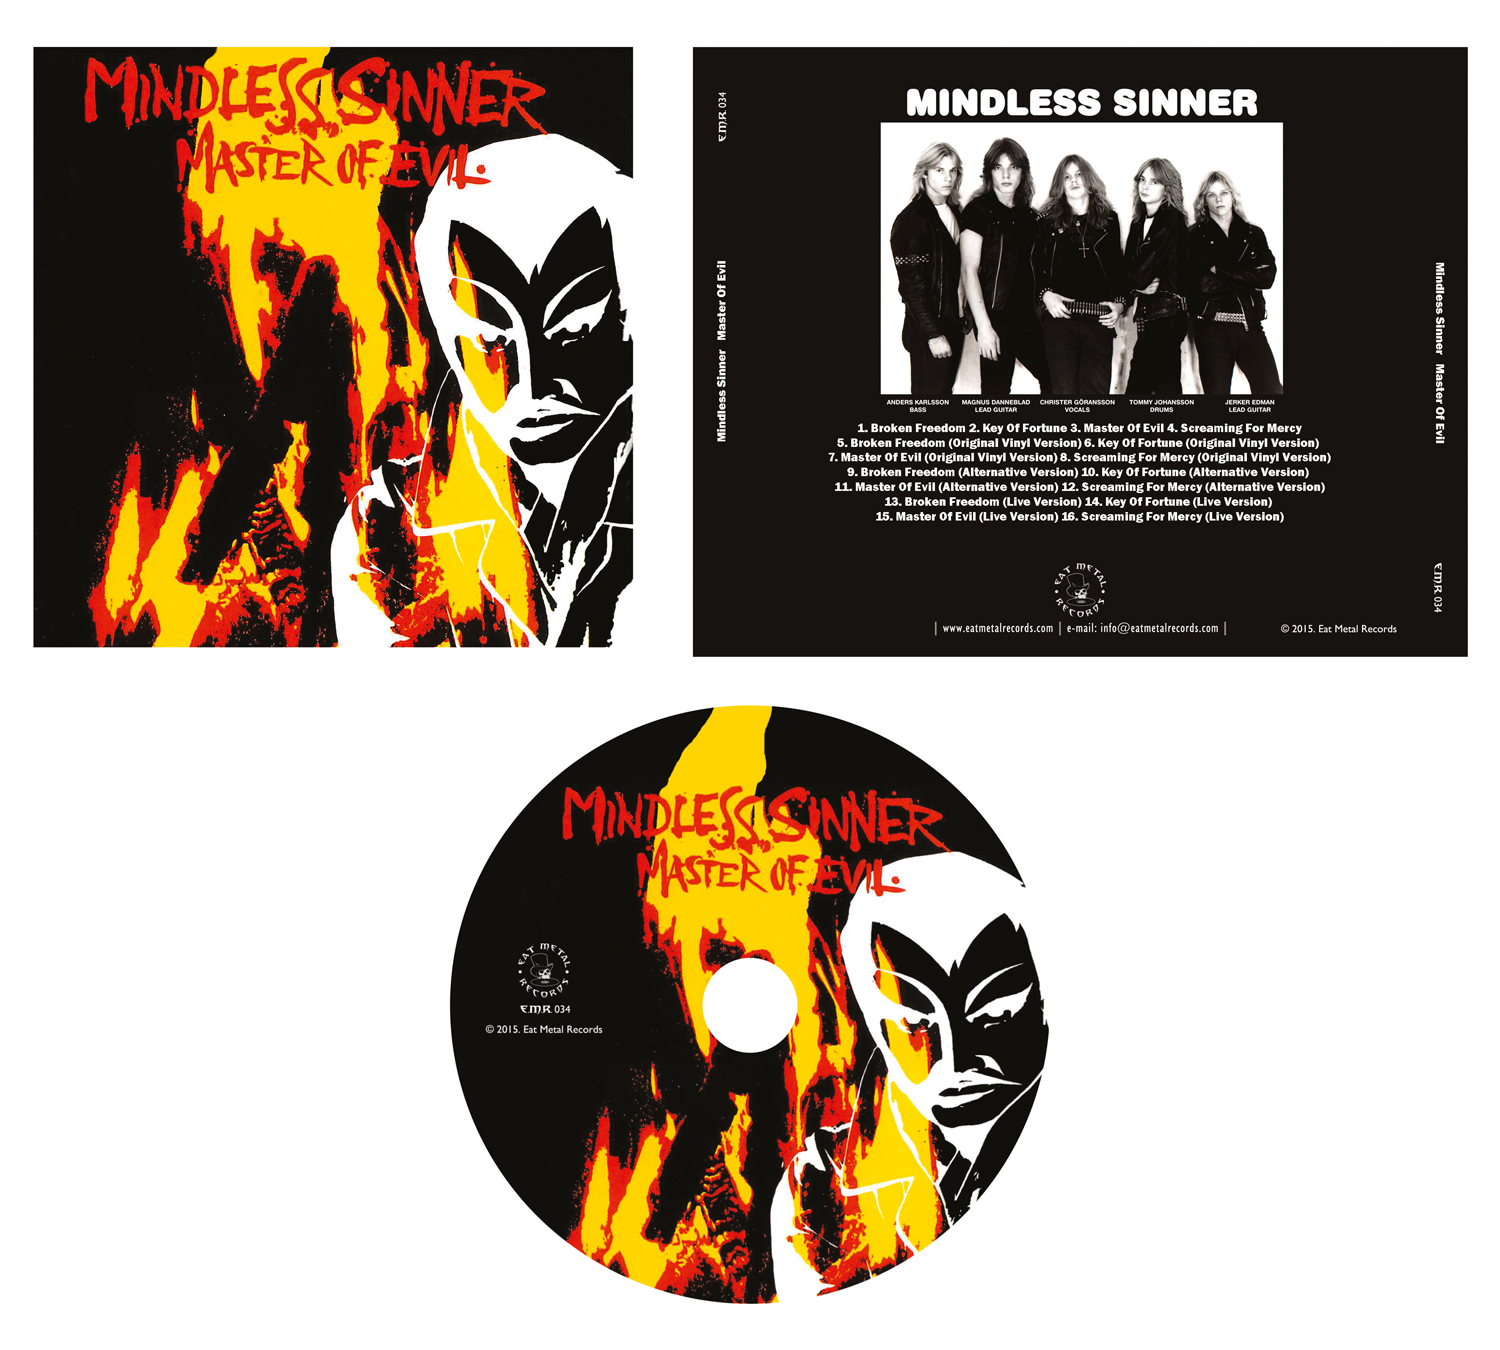 MINDLESS SINNER Master of evil cd